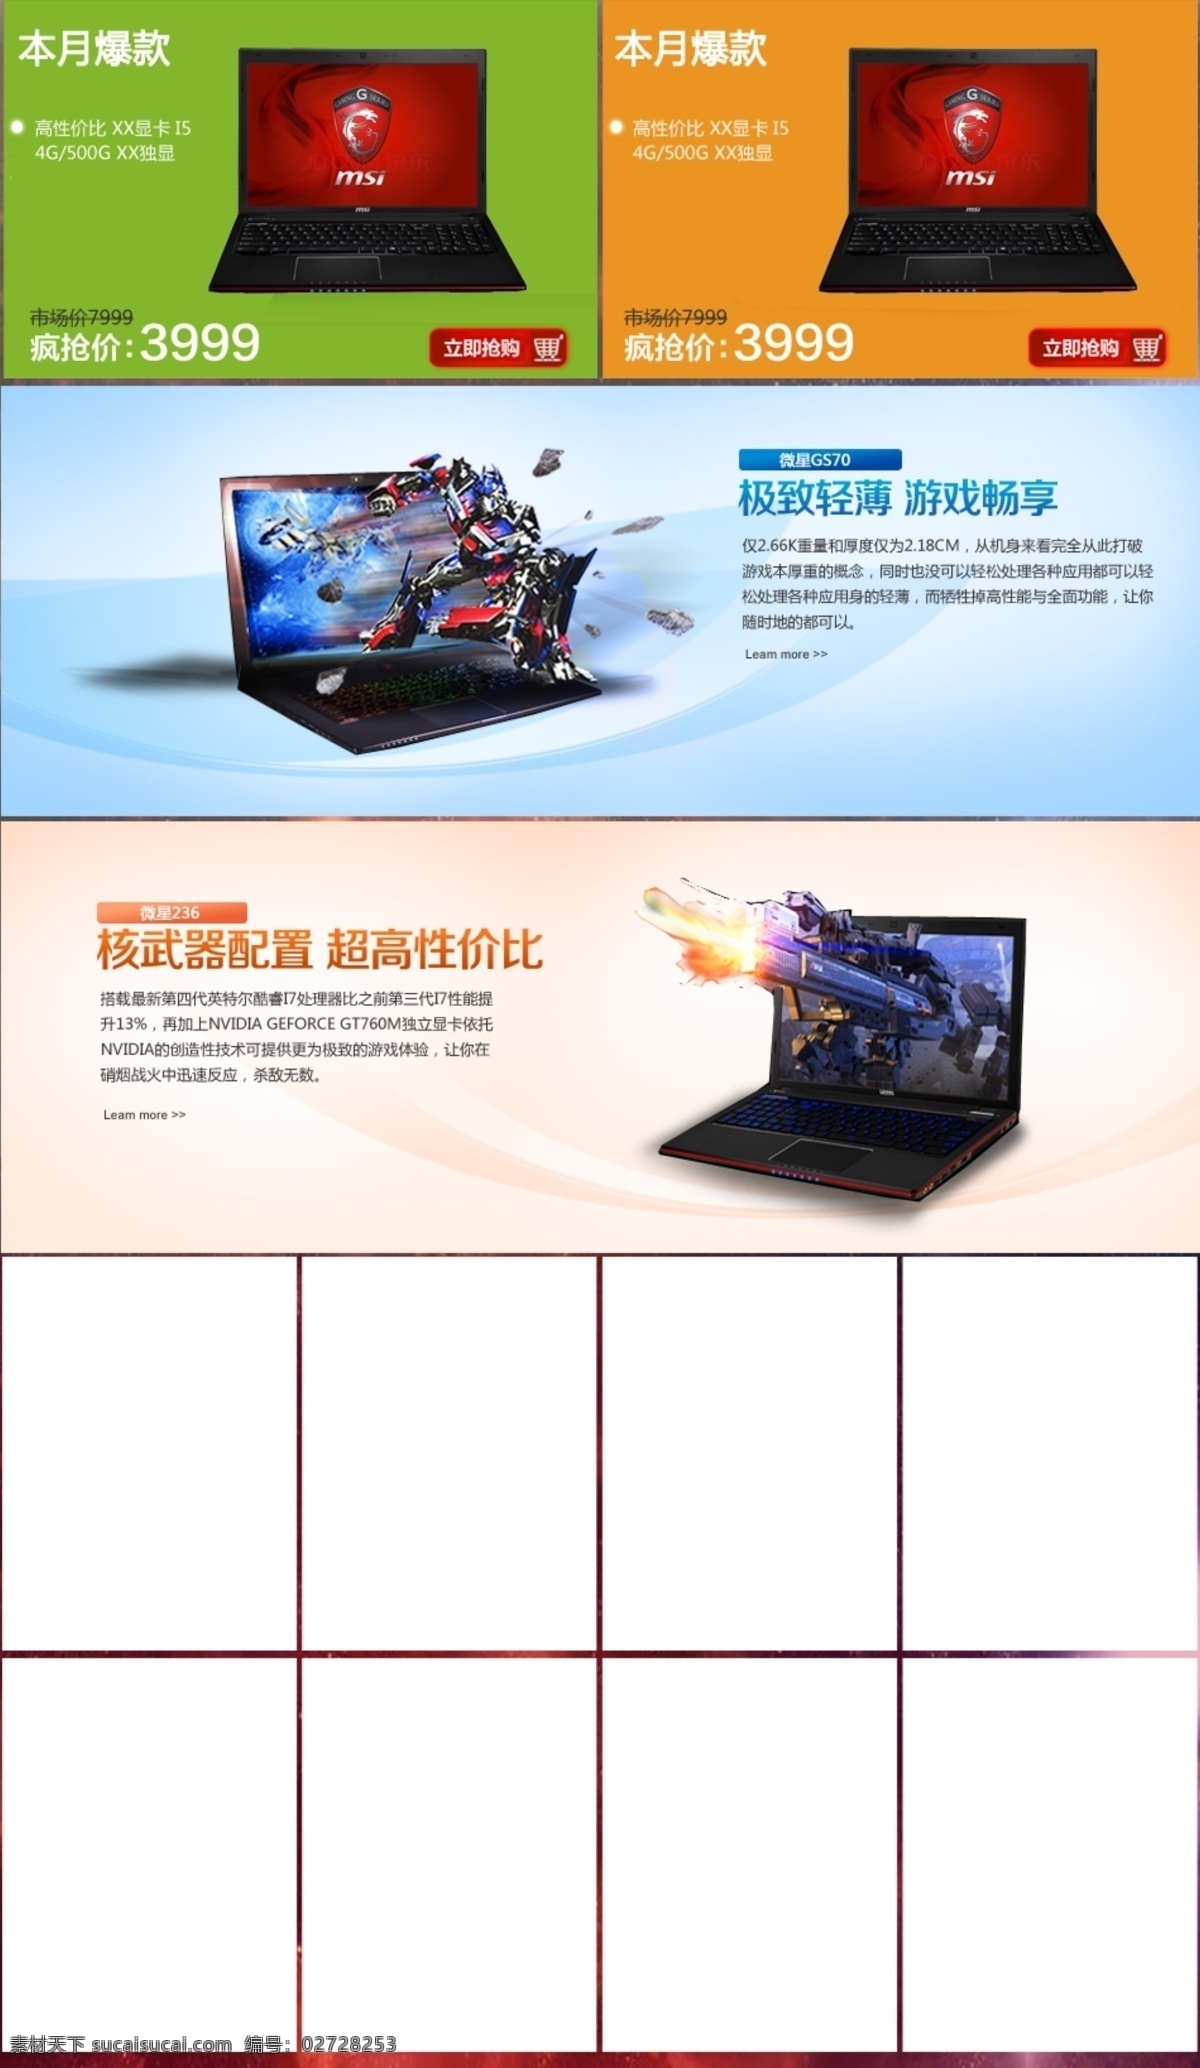 笔记本 电脑 海报模板下载 海报素材下载 其他模板 网页模板 源文件 海报 微星 游戏本 其他海报设计